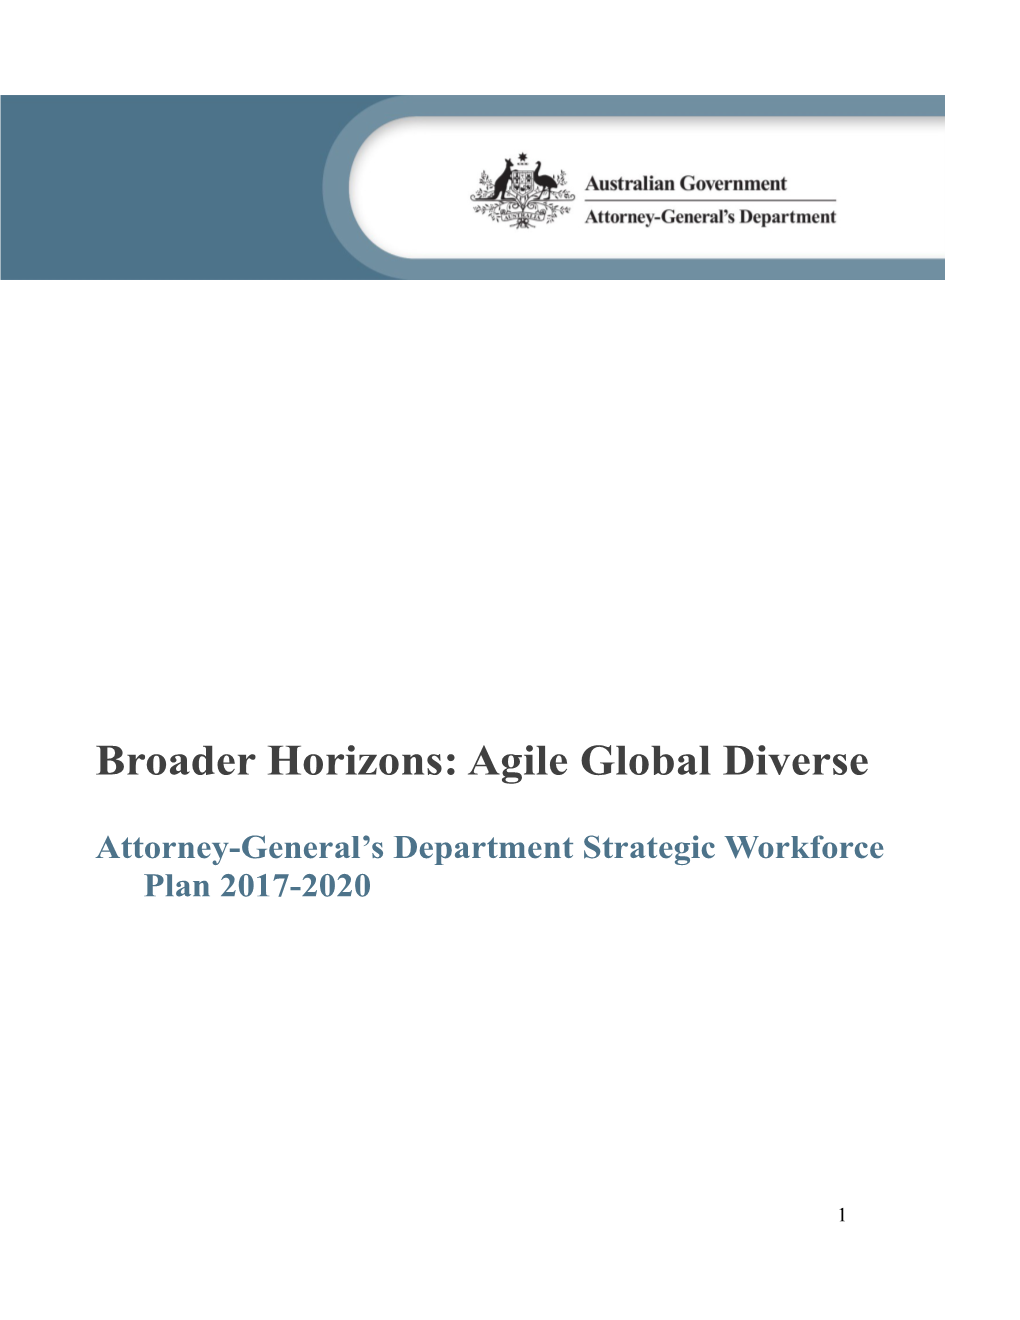 Broader Horizons: Agile Global Diverse